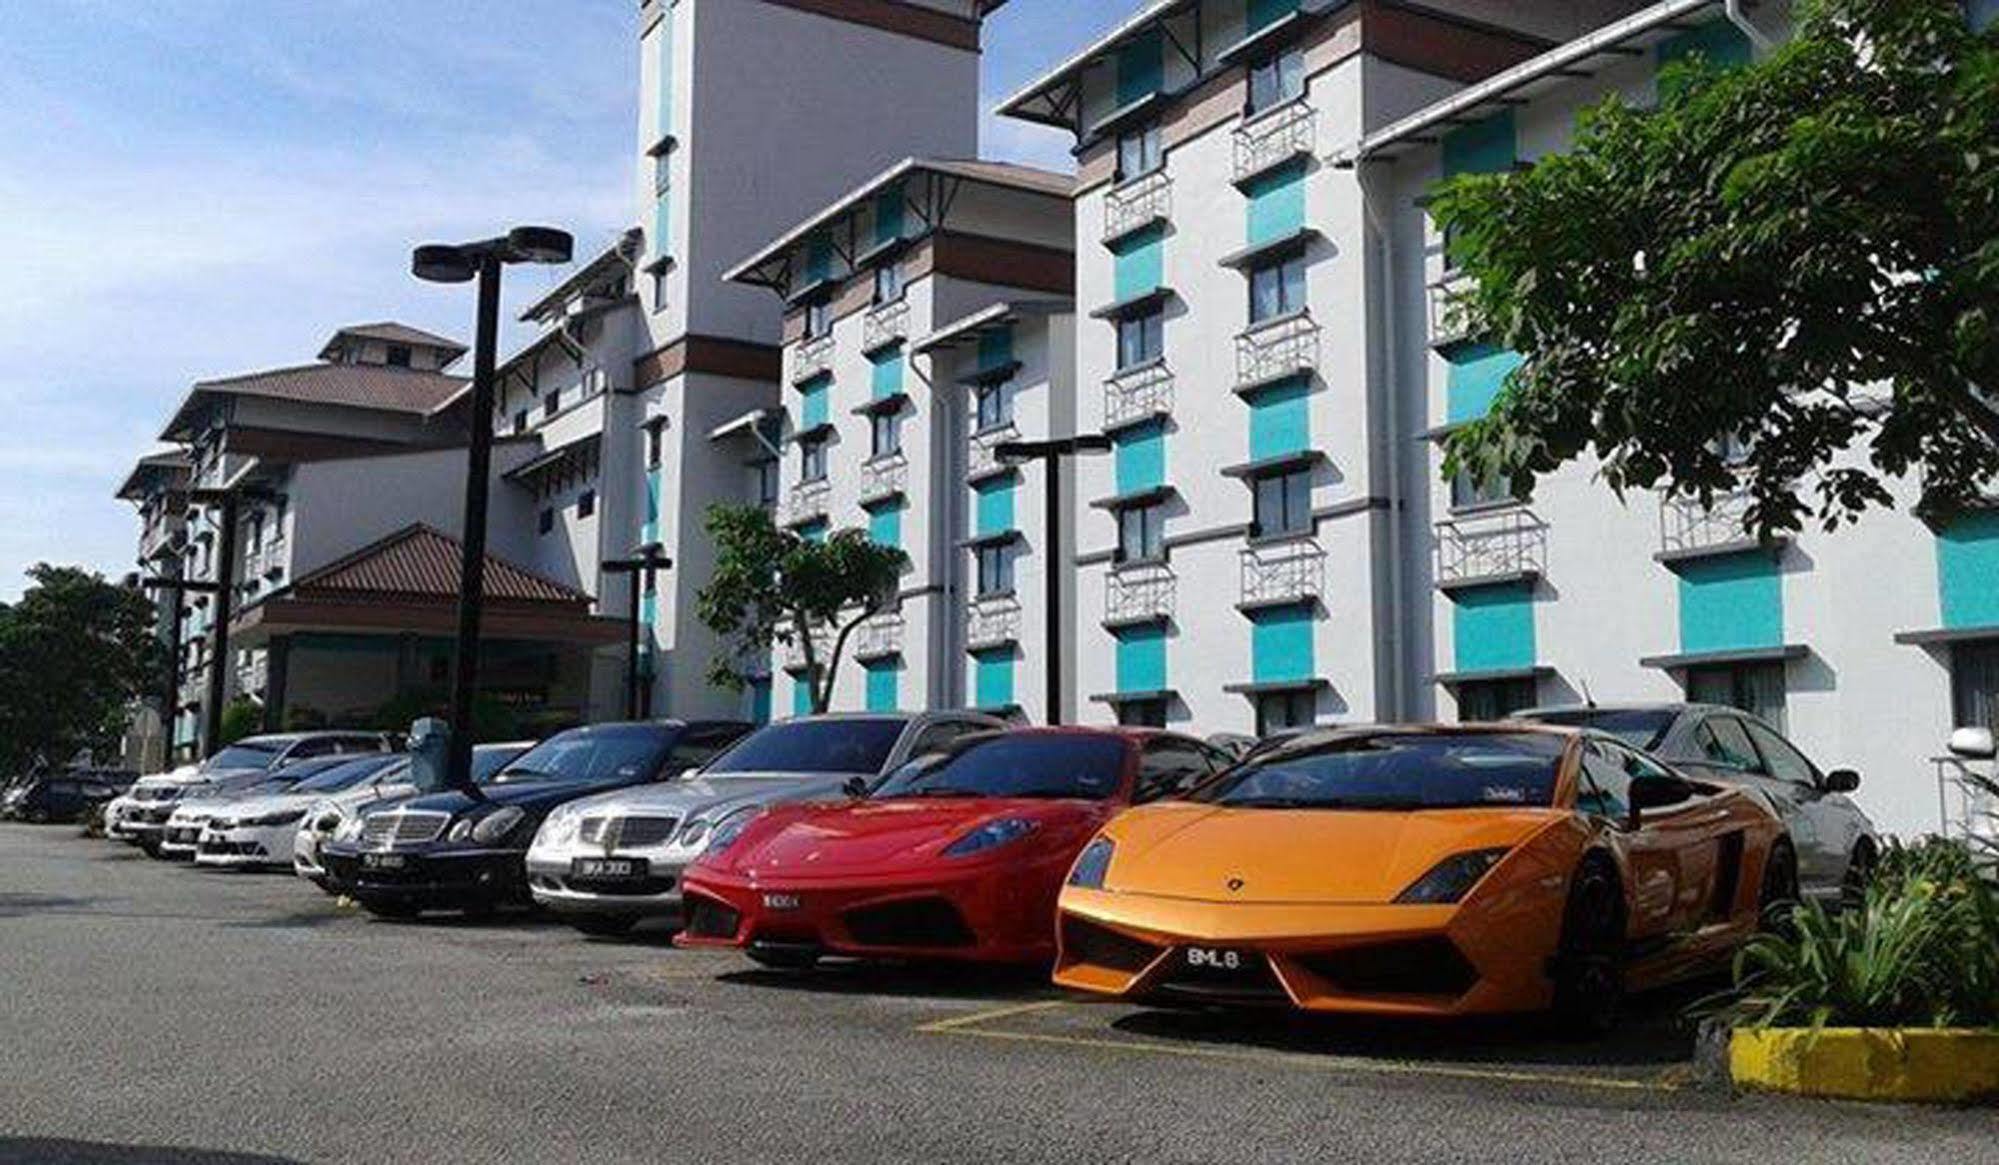 Merrida Hotel Klang Exterior photo